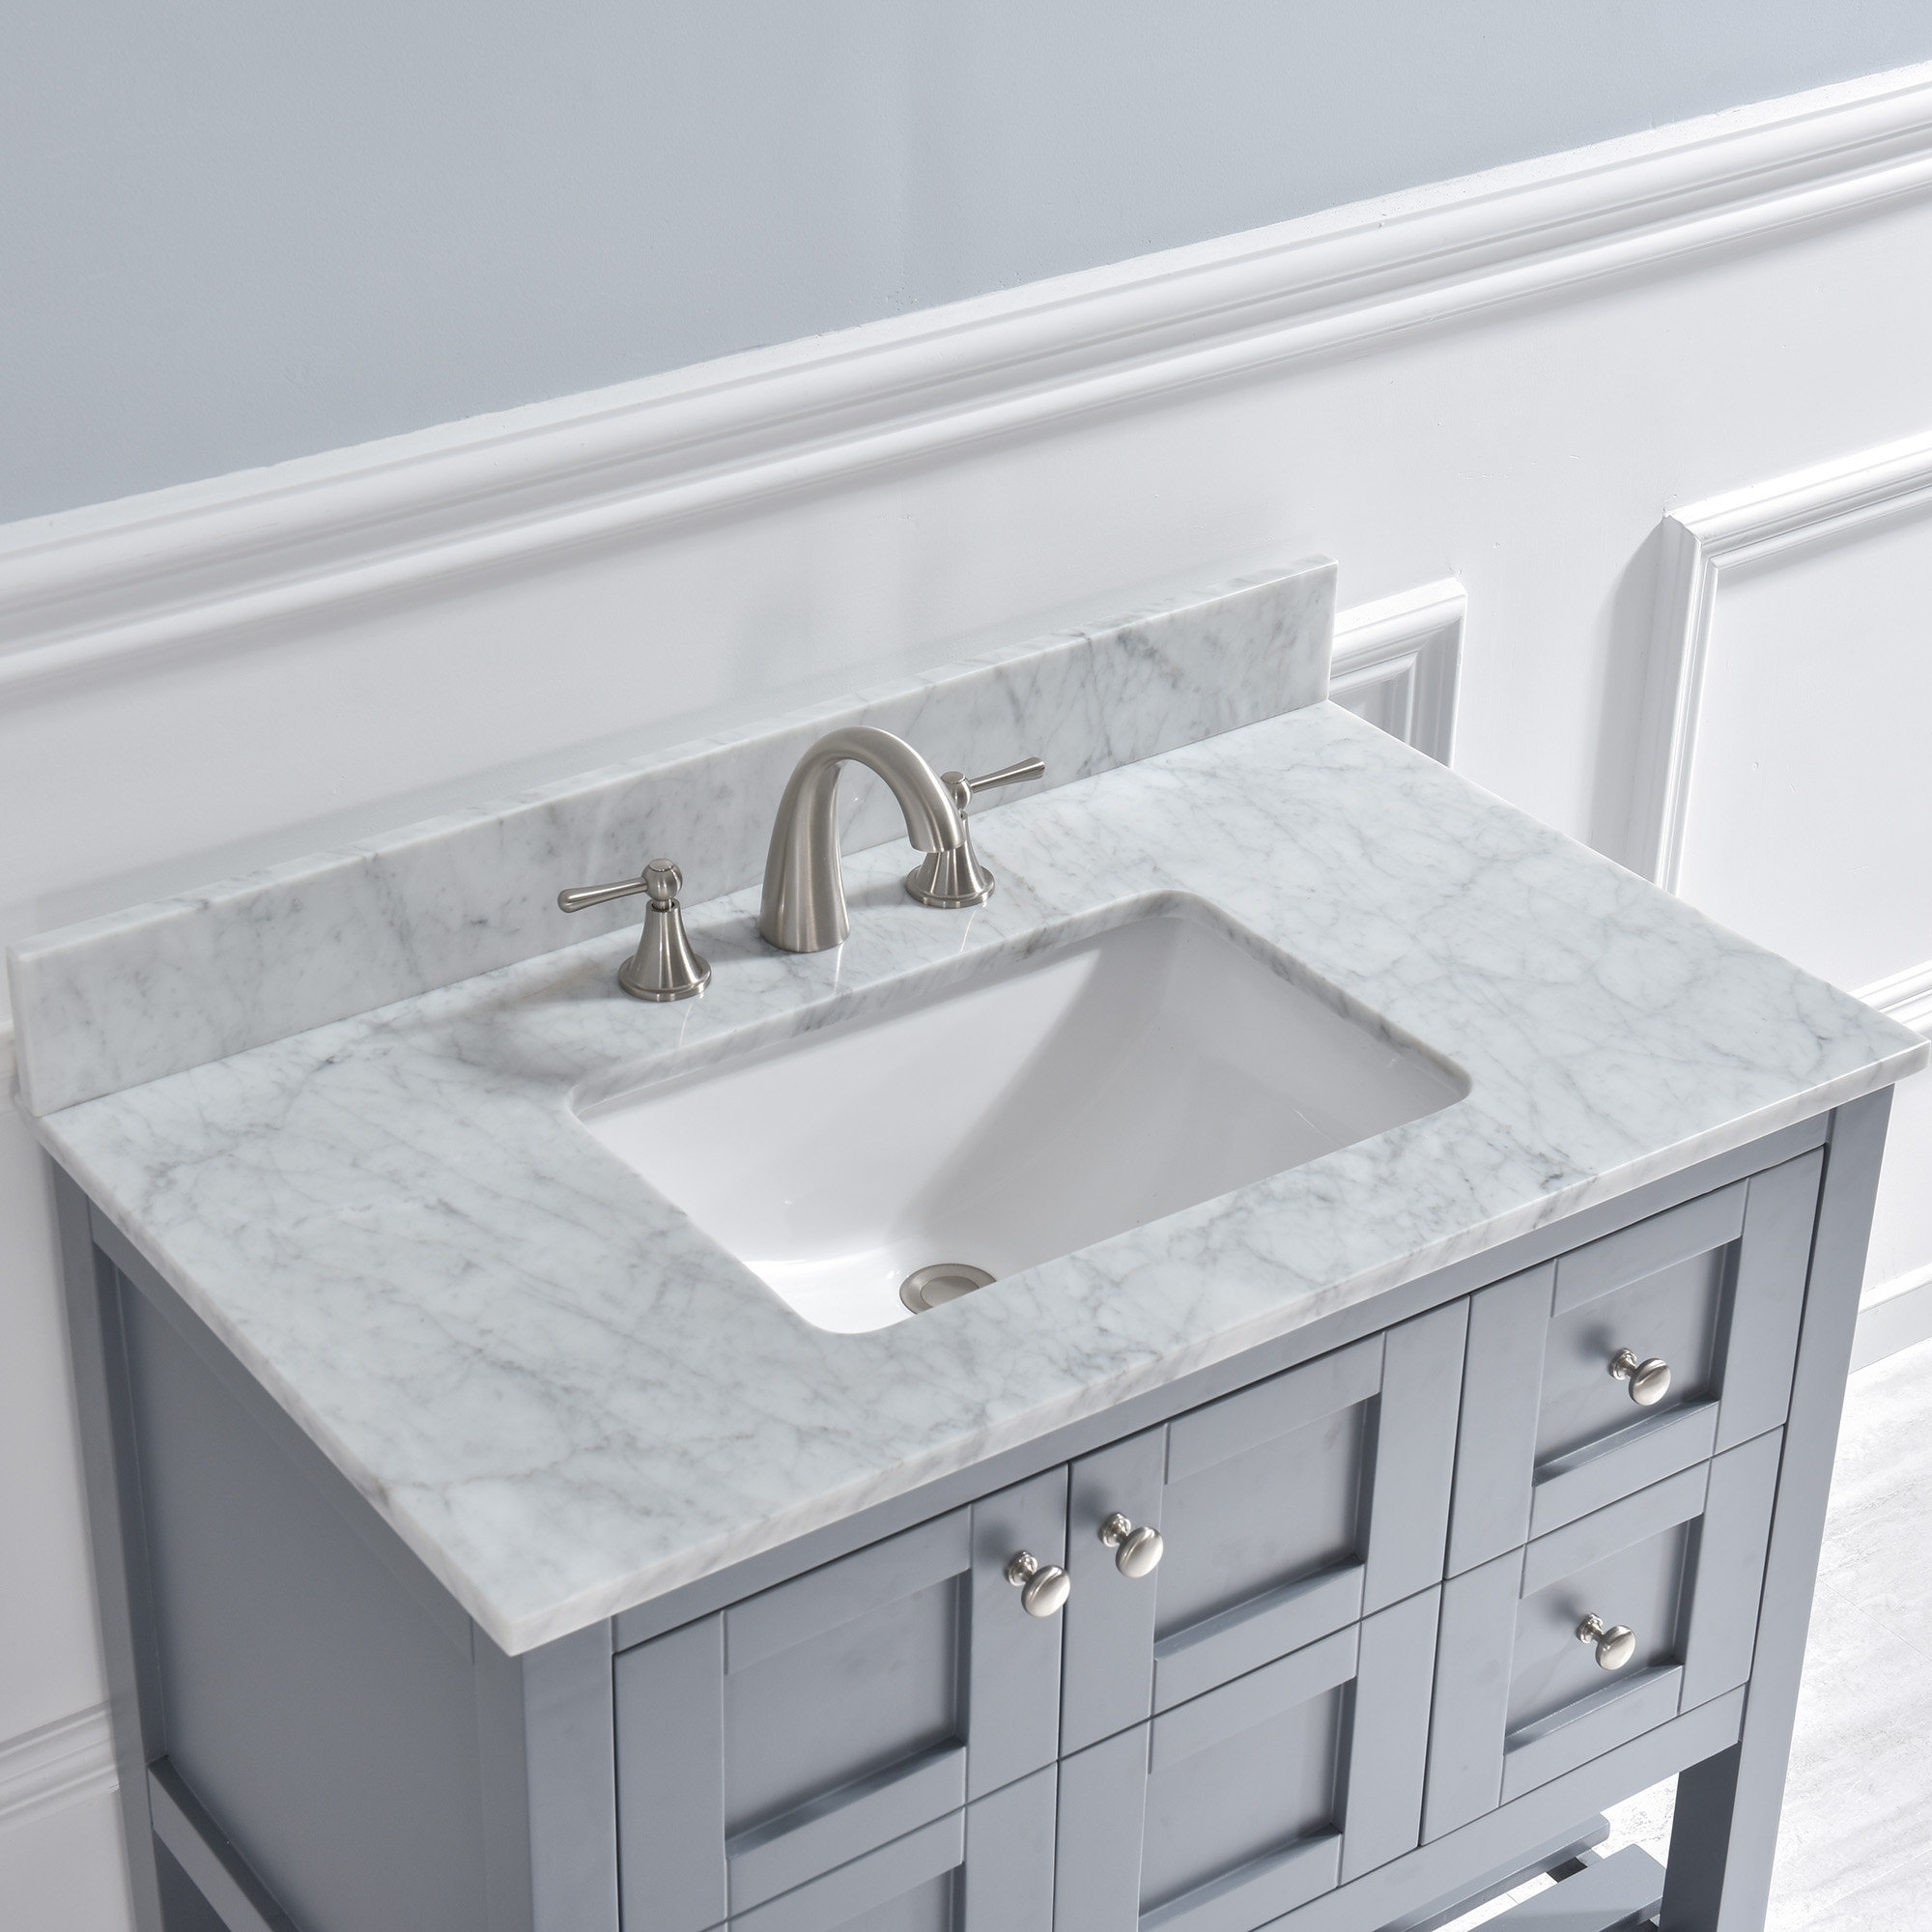 WoodBridge Stone Single Vanity Top with Sink Faucet Reviews | Wayfair